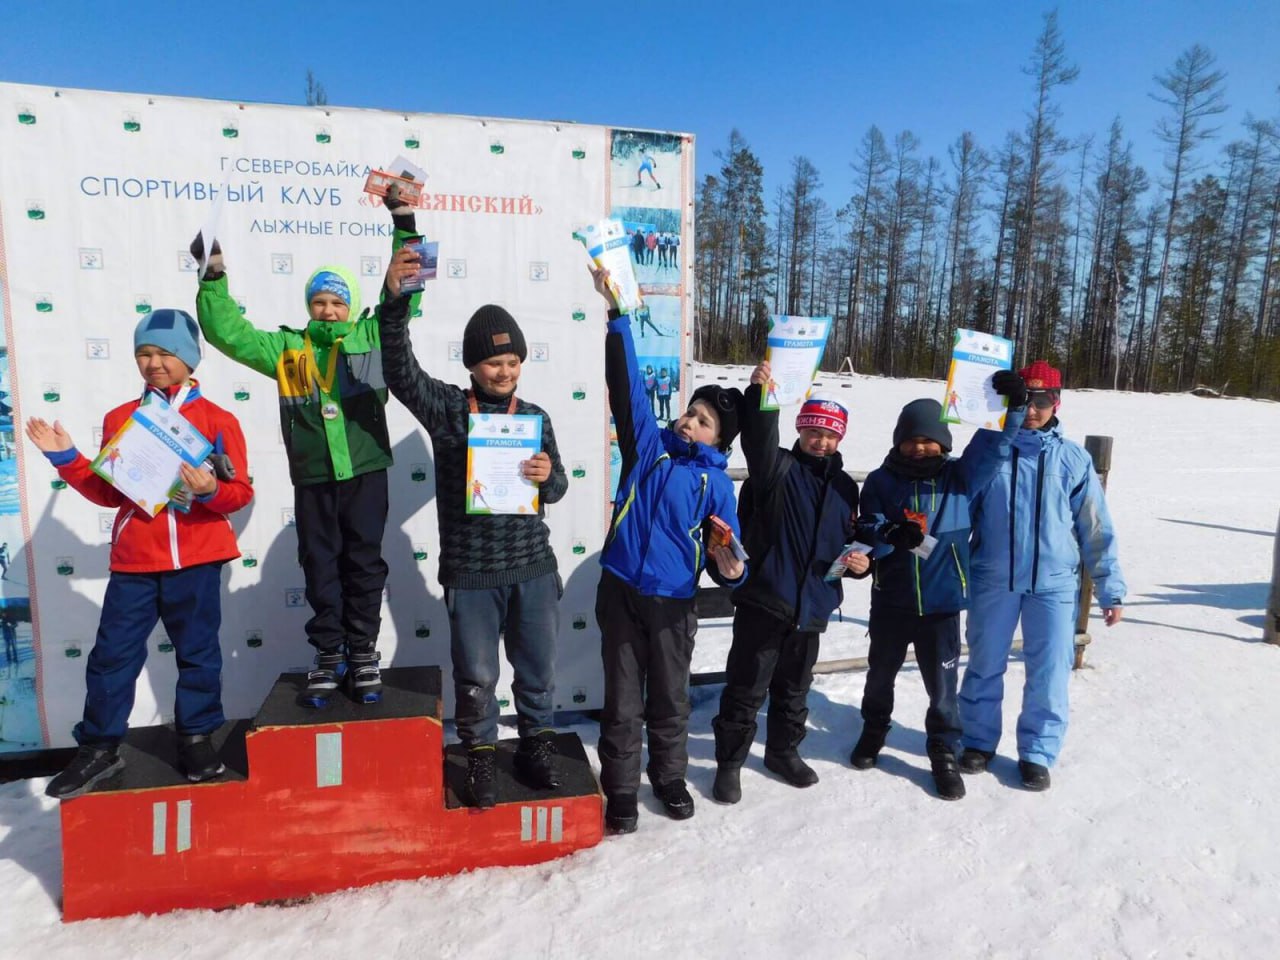 25 марта на лыжной трассе микрорайона Заречный состоялись открытые соревнования по лыжным гонкам.